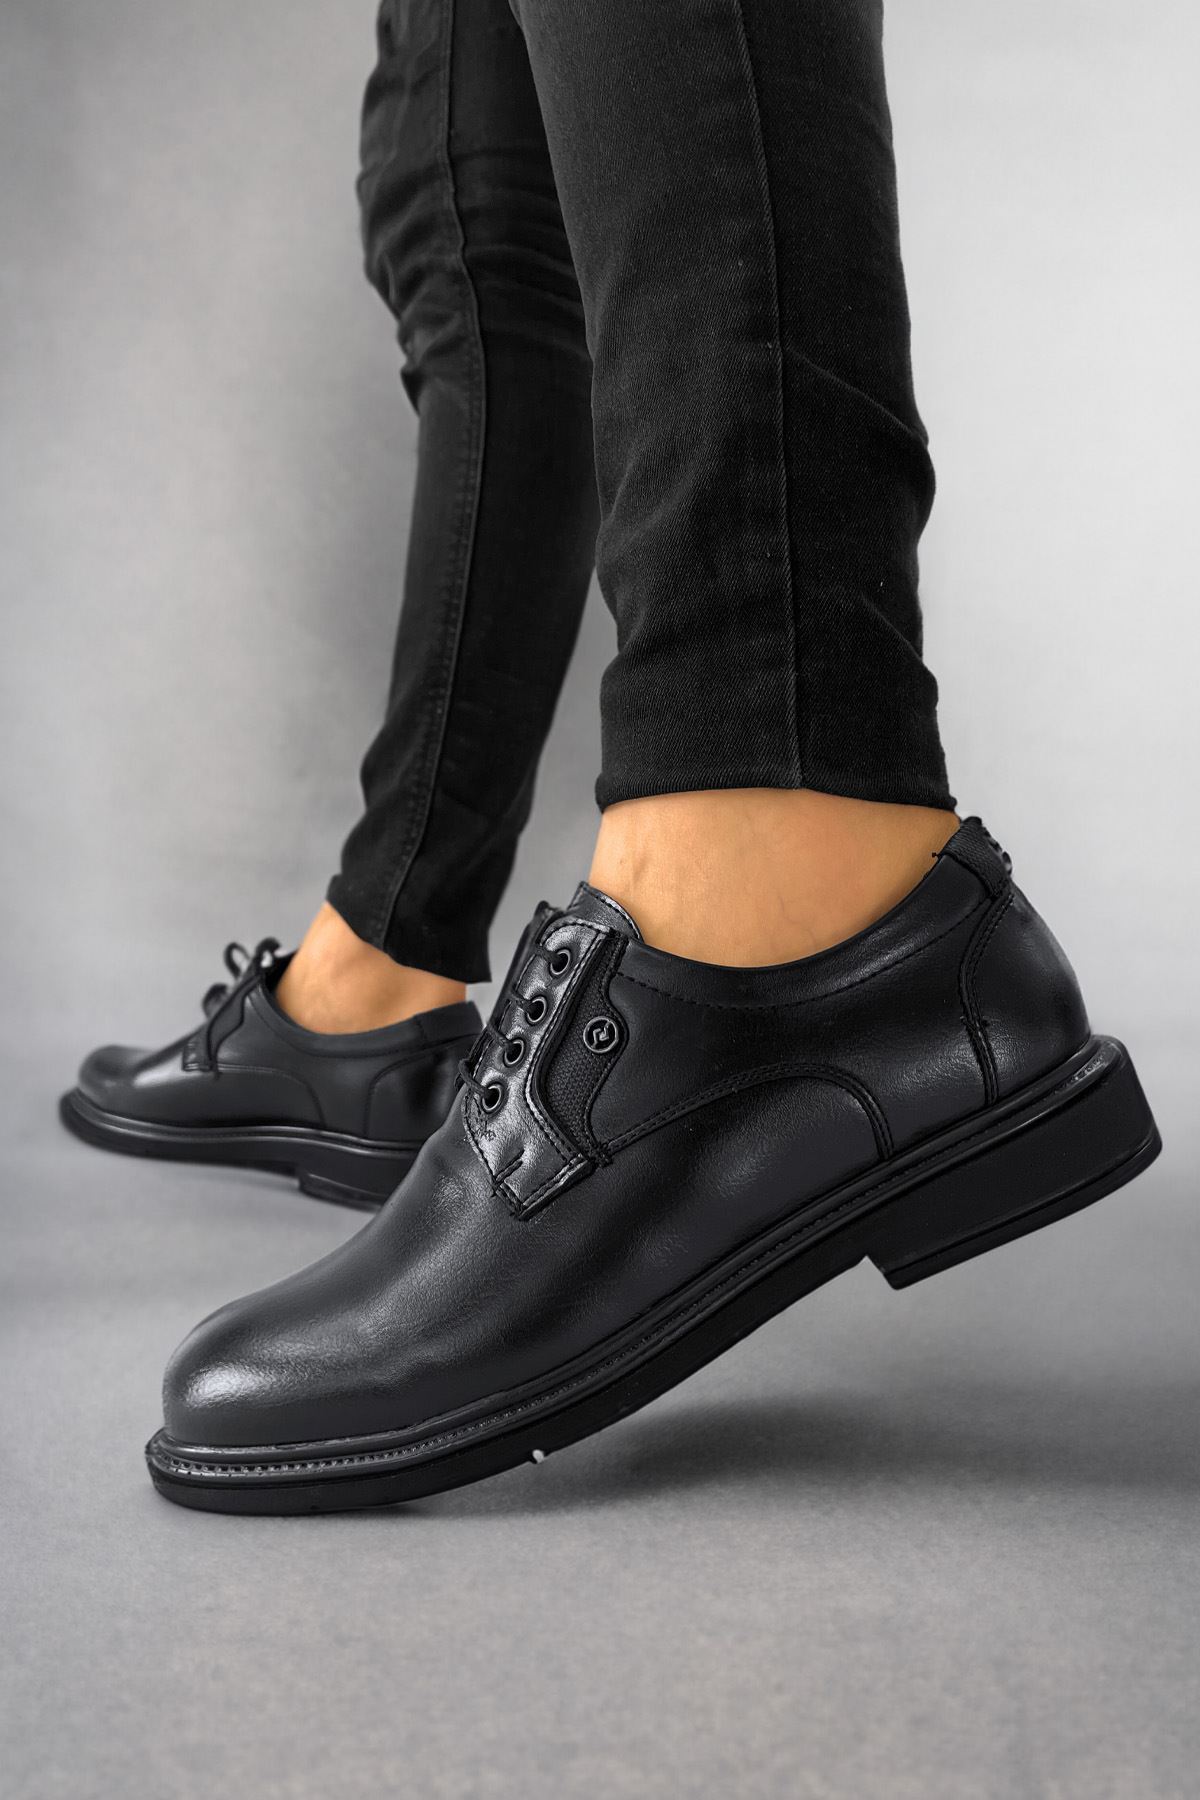 Boy Uzatan Ayakkabı Gizli Topuklu Siyah Cilt Erkek Klasik Ayakkabı MYY531